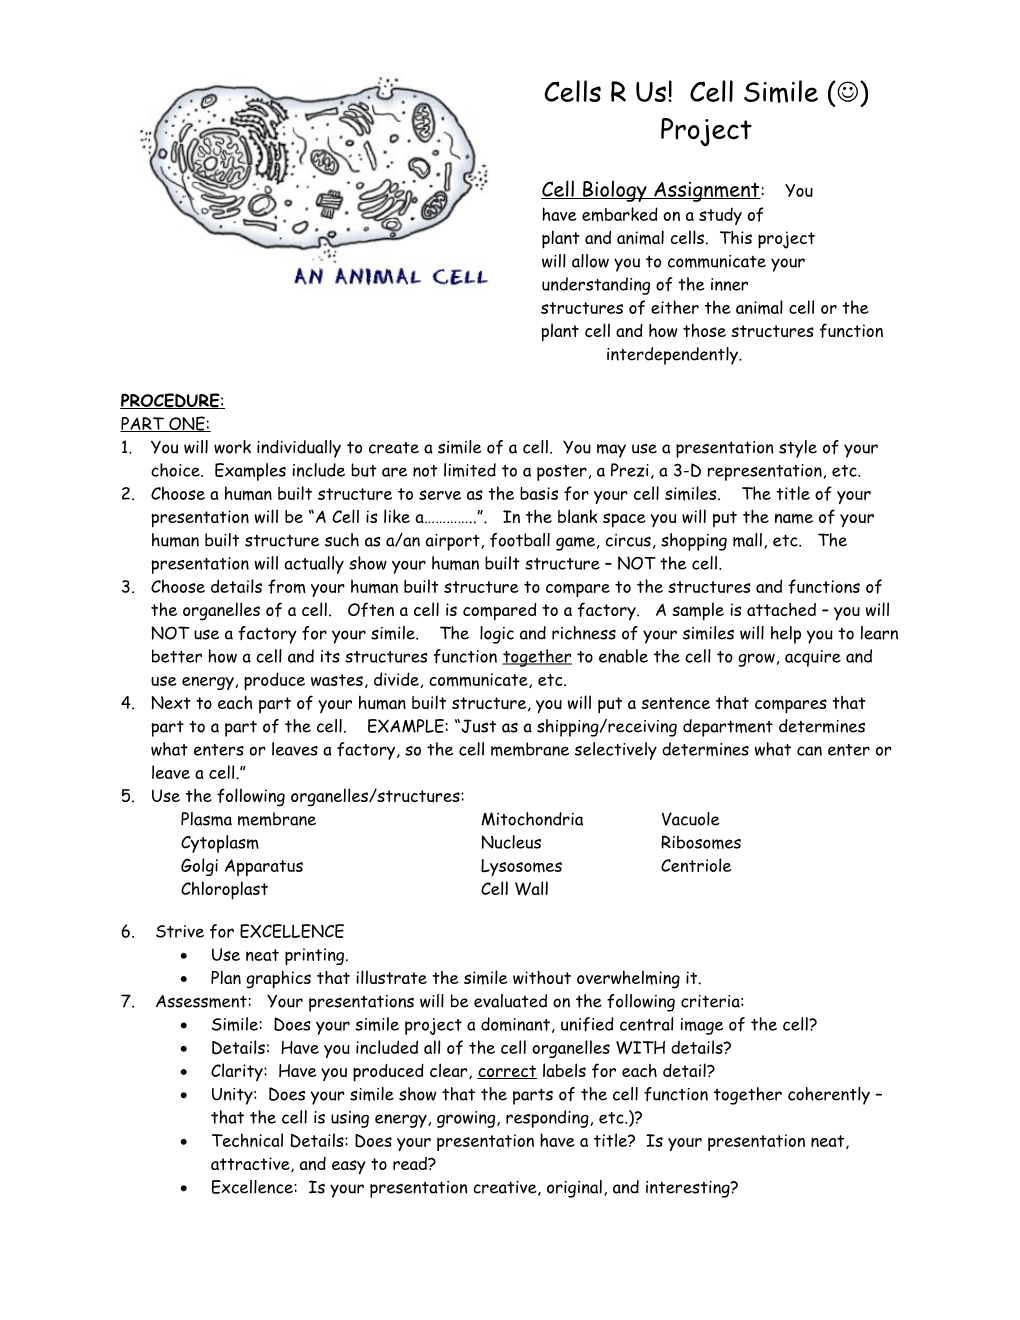 Biology 2 - Cell Biology Assignment